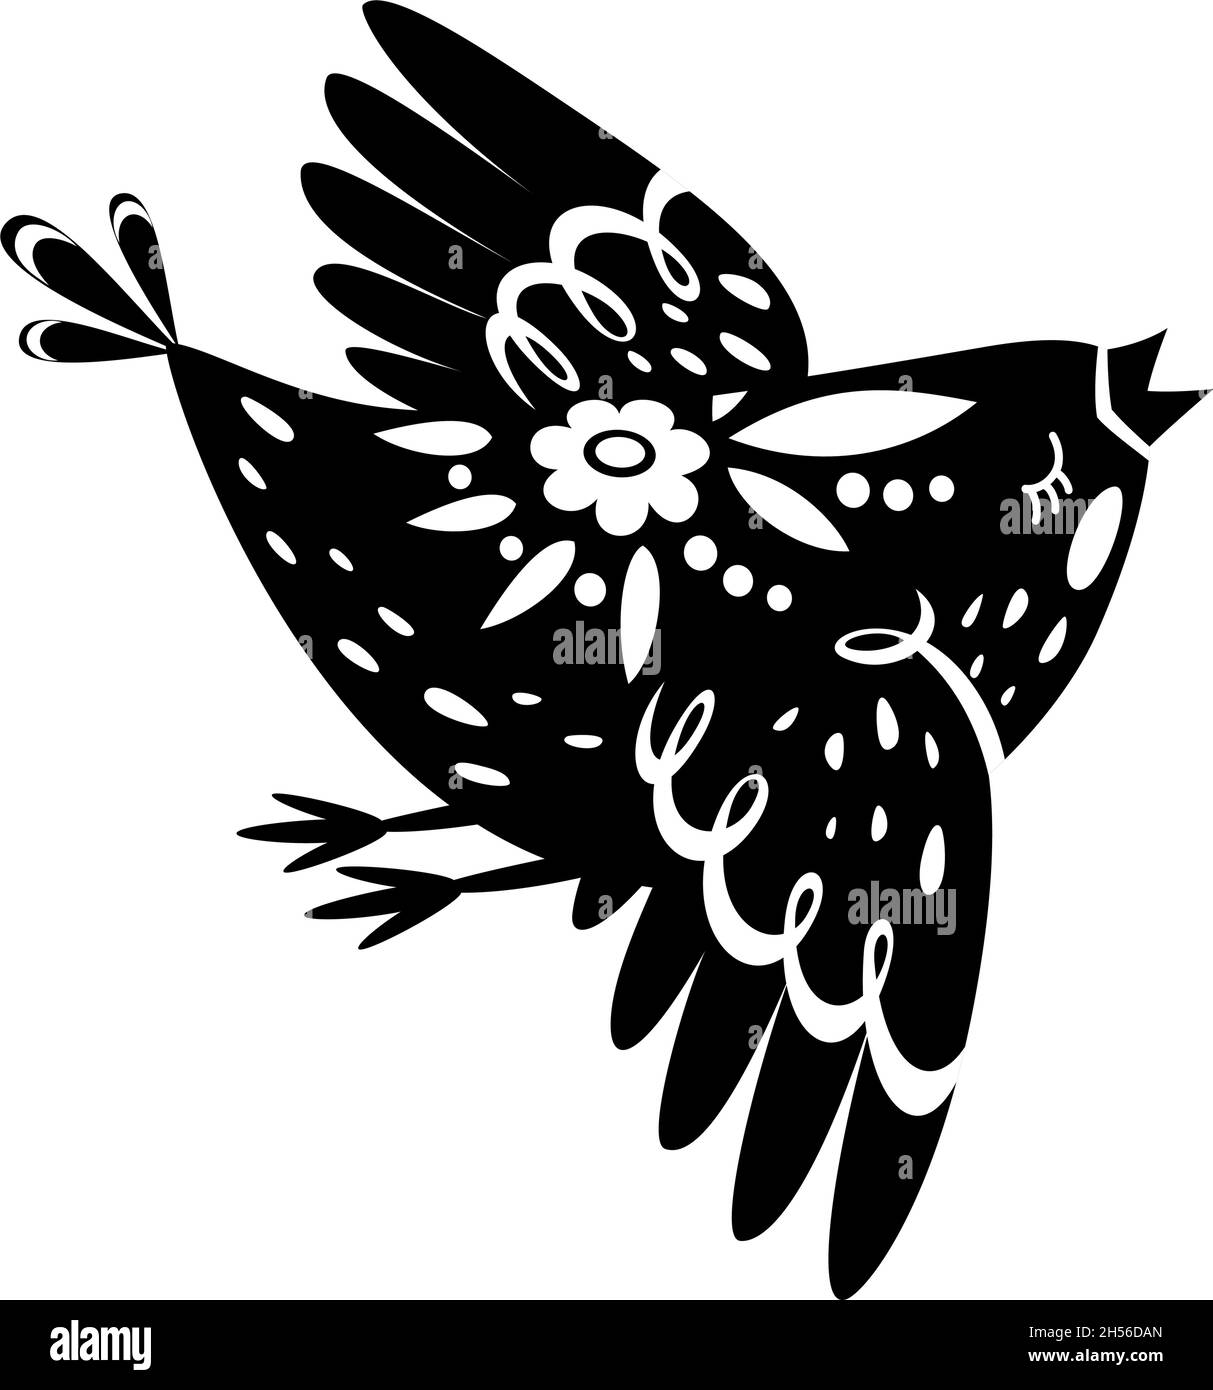 Oiseau volant de queue de fées, dessin animé animal.Dessin d'esquisse noir d'oiseau vectoriel, dessin d'art fée nature, illustration de tatouage volant Illustration de Vecteur